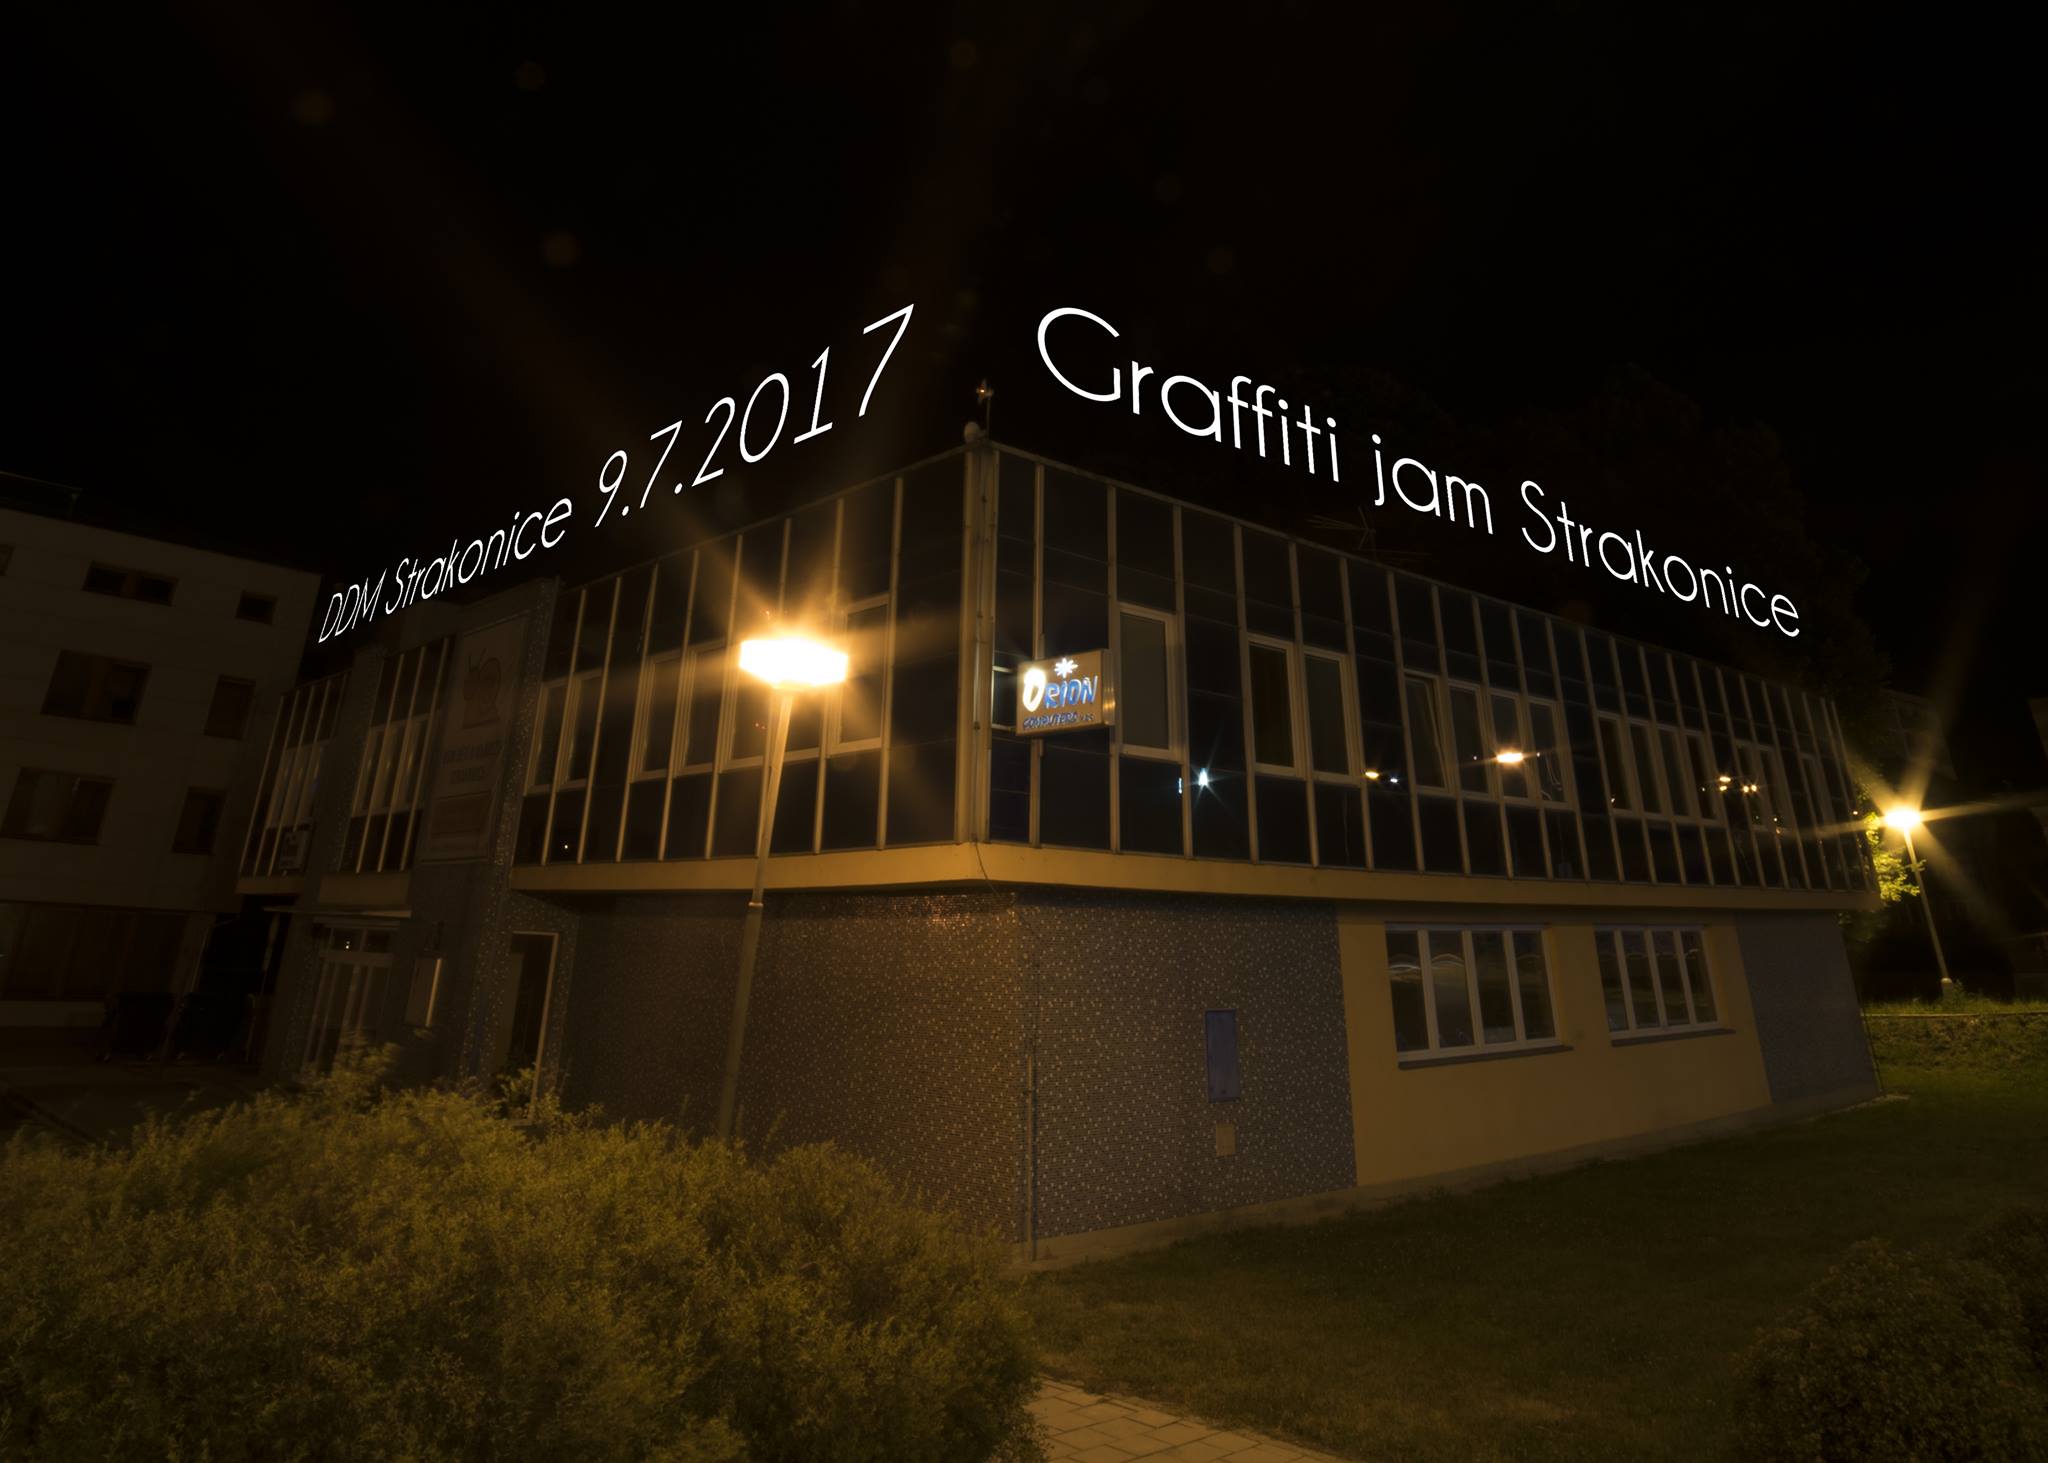 GRAFFITI JAM 2017 - Strakonice